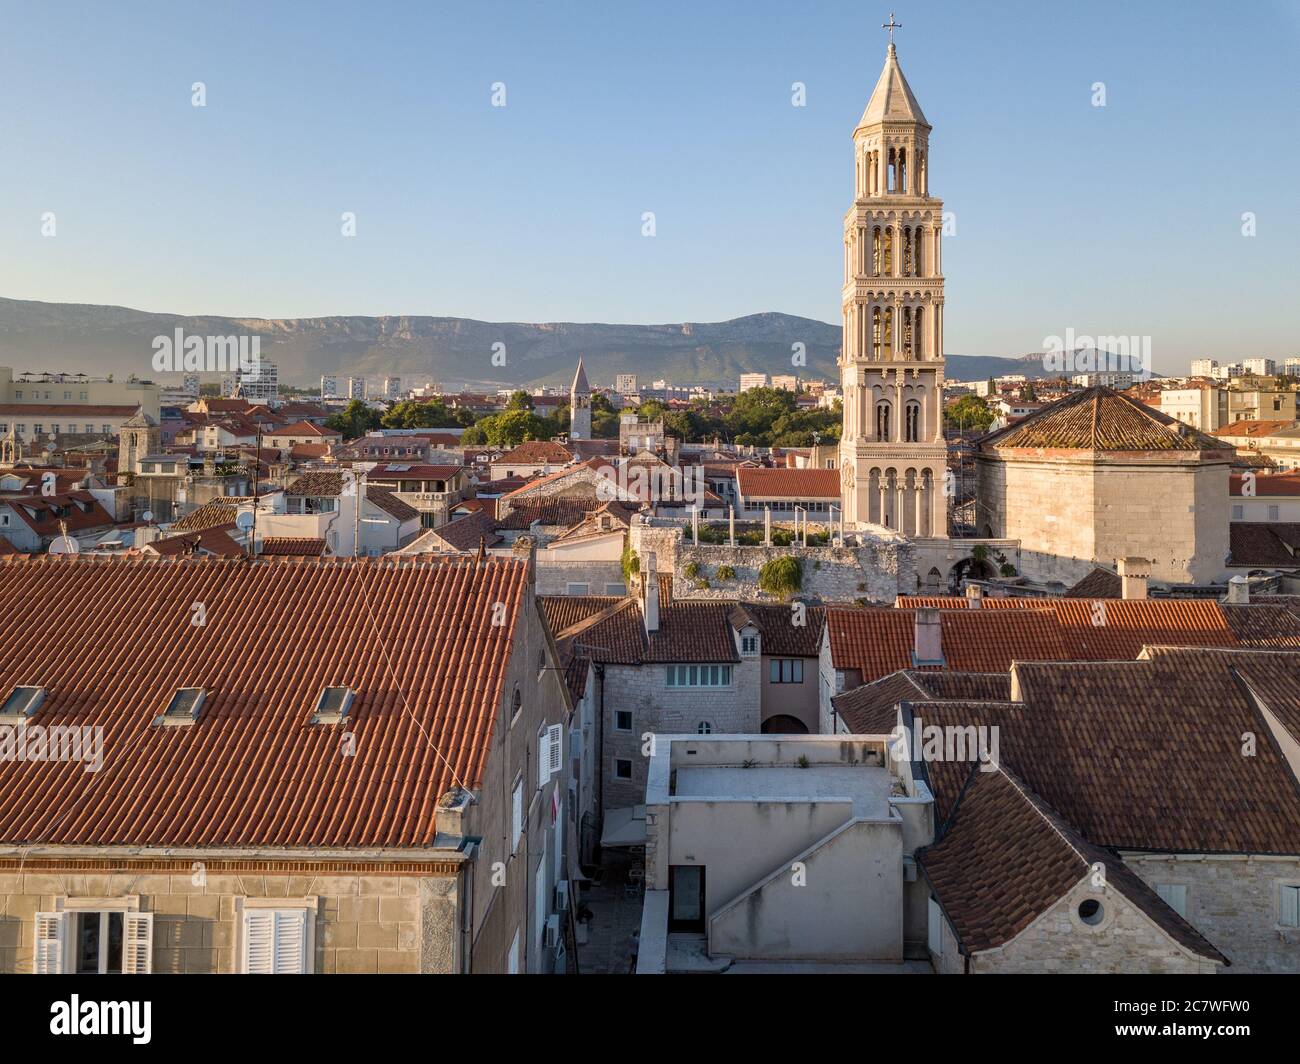 Split, Croatie - août 15 2019 : une image de paysage urbain d'été, avec le Palais Dioclétien, le clocher de la cathédrale Saint-Domnius et la promenade Riva, le soir Banque D'Images